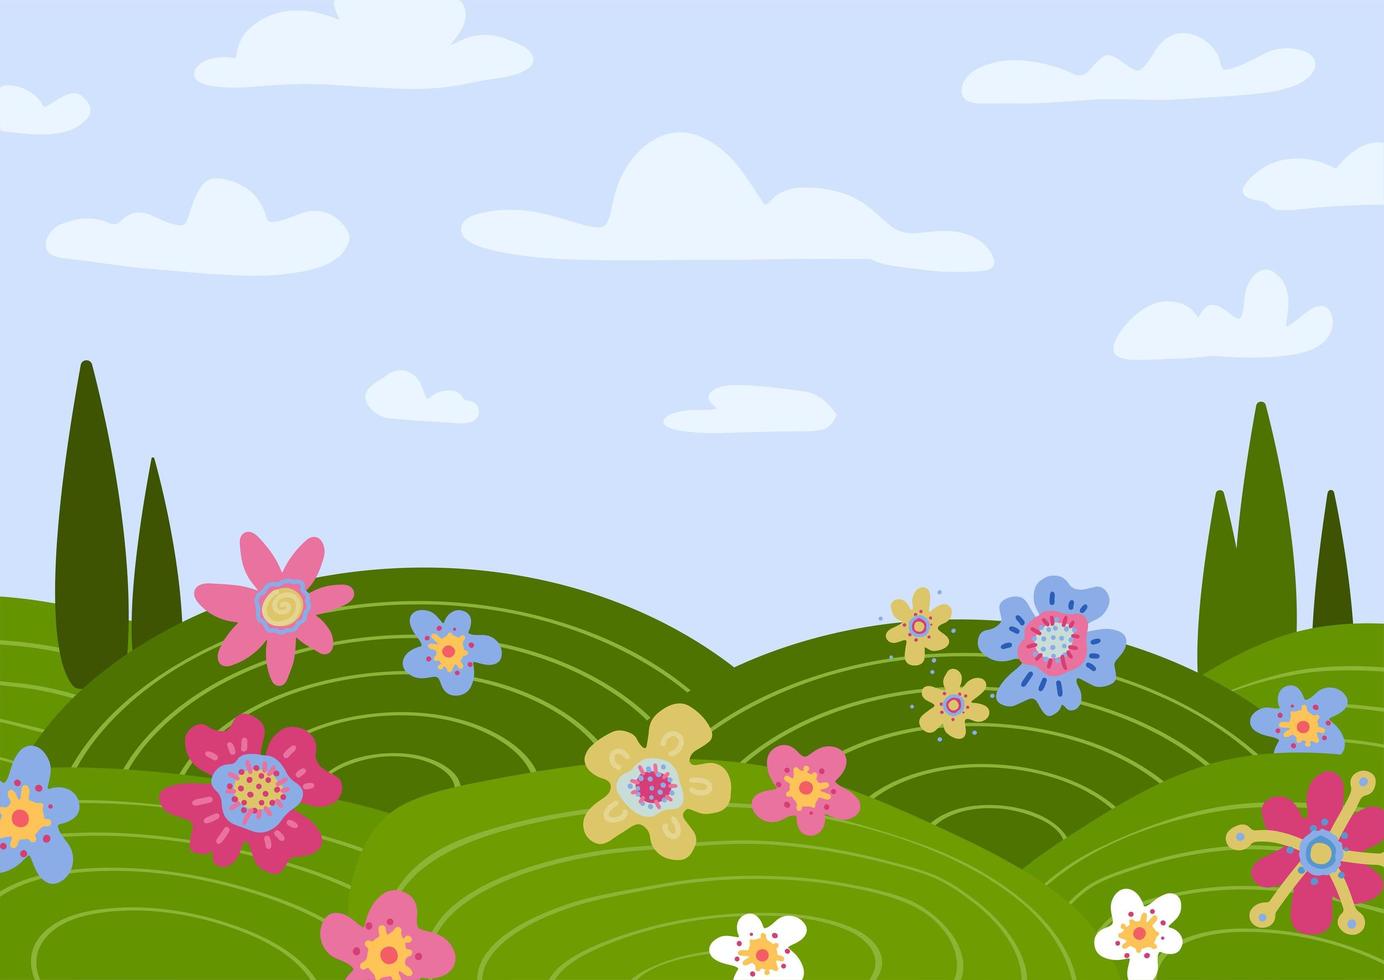 cena de paisagem rural com cipreste. fundo de cenário de país de verão com campos verdes, prado, nuvens, grama, flores, árvores, céu azul. ilustração em vetor estilo dos desenhos animados design plano.